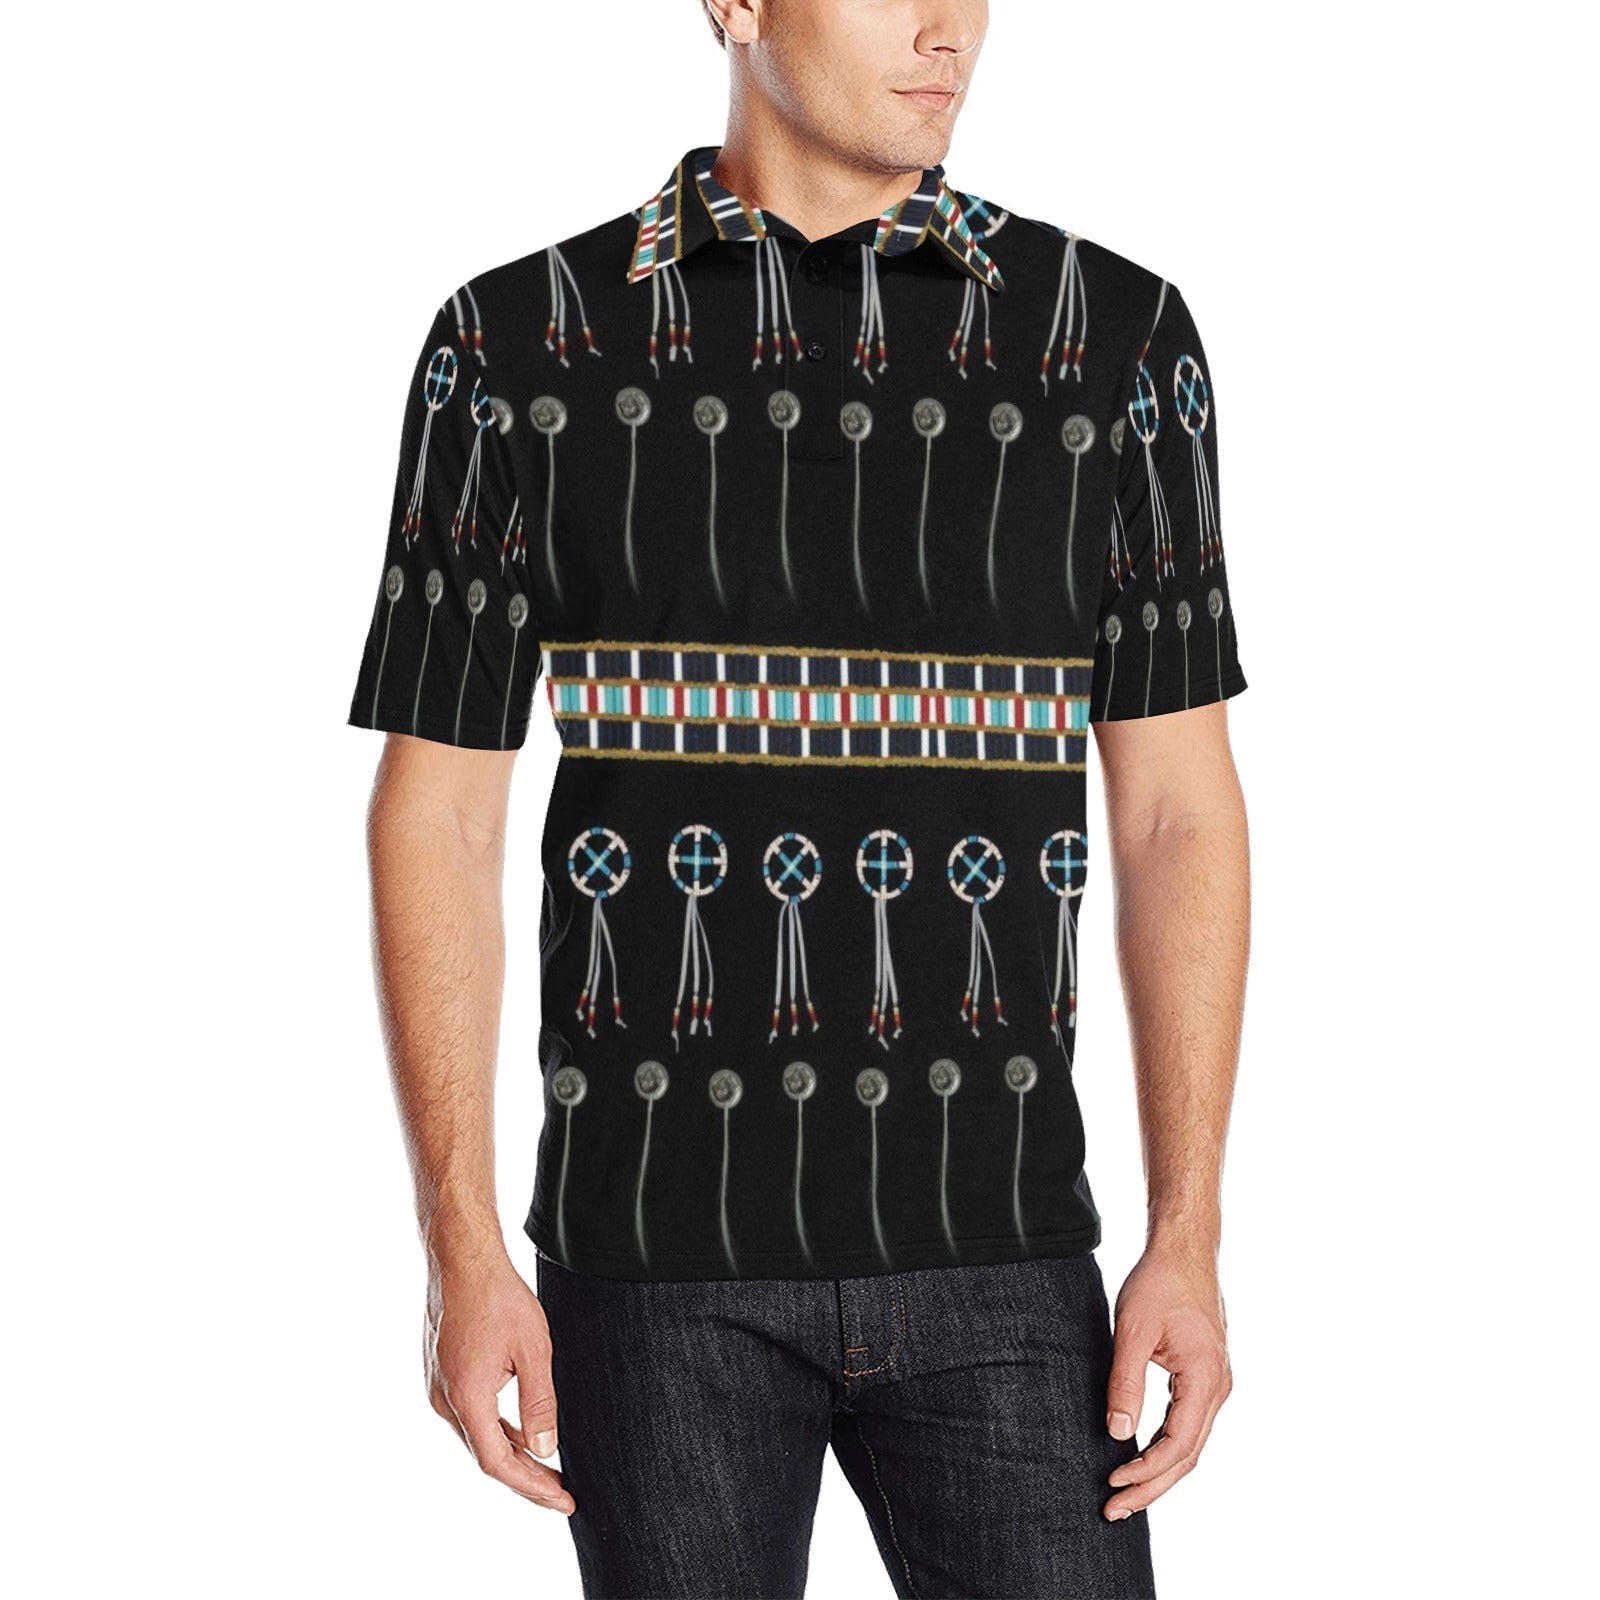 Beaded Bracelet Men's All Over Print Polo Shirt (Model T55) Men's Polo Shirt (Model T55) e-joyer 